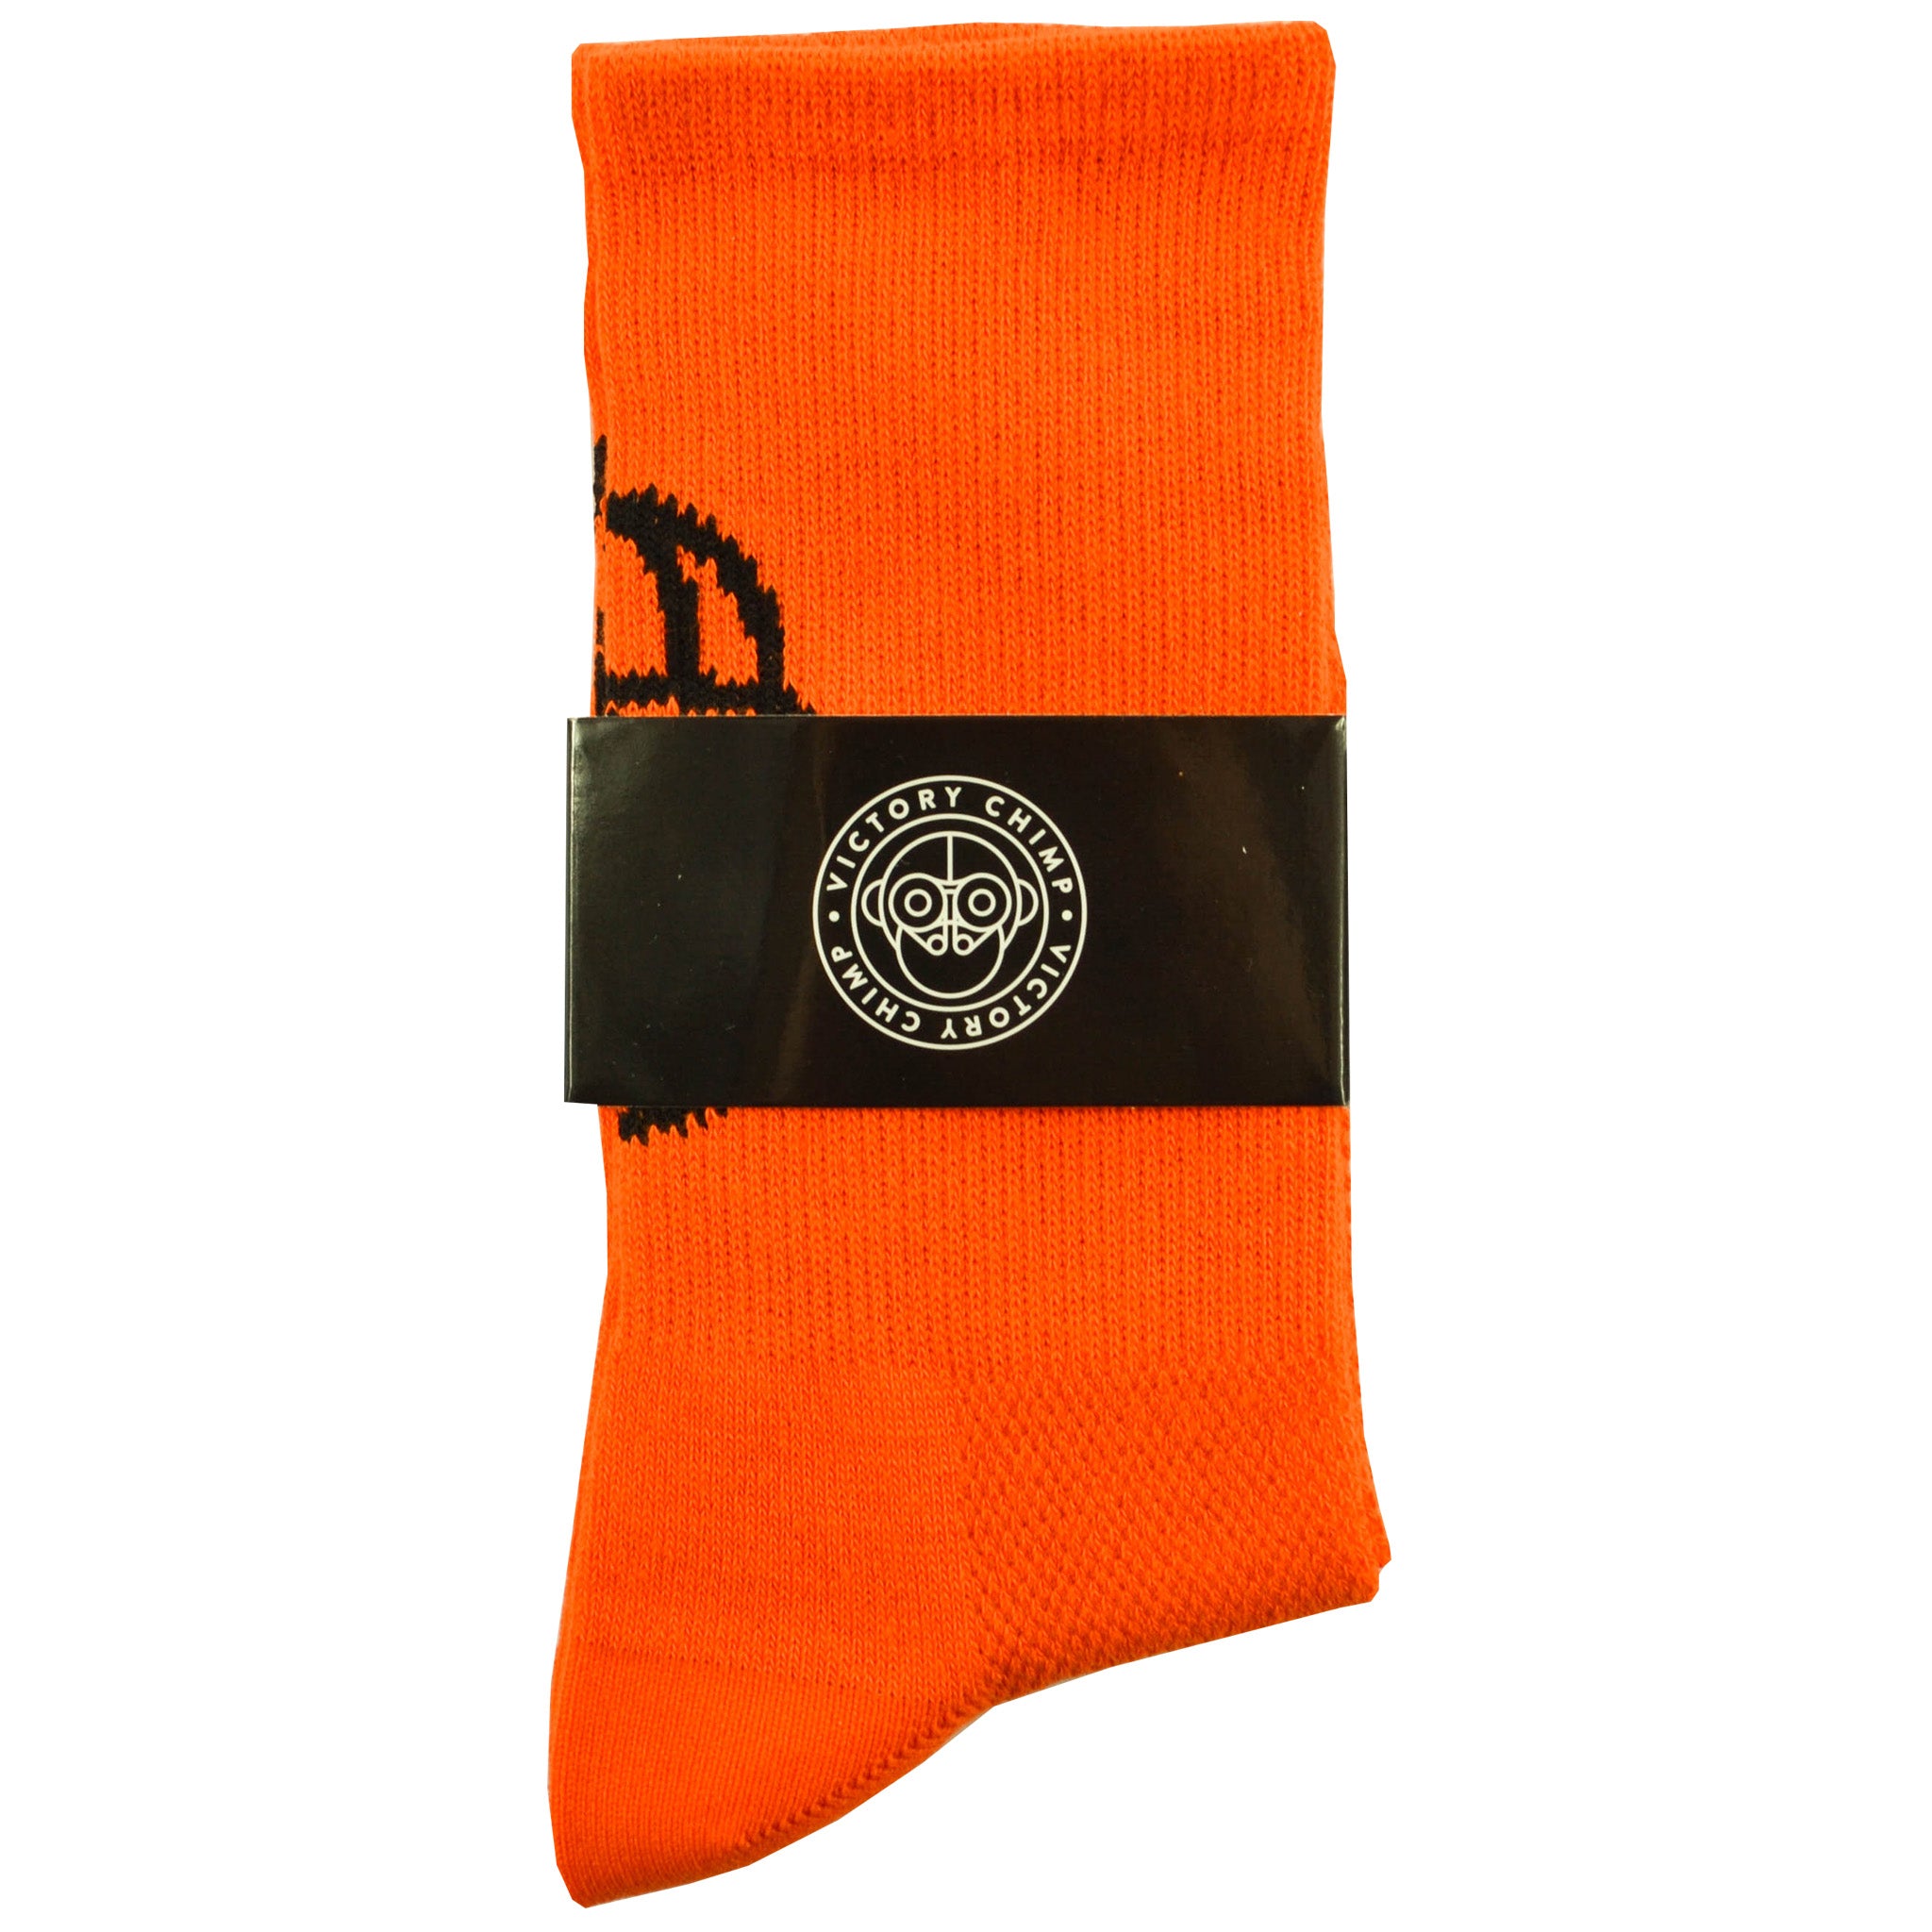 Signature Chimpeur High Top Socks (Orange)